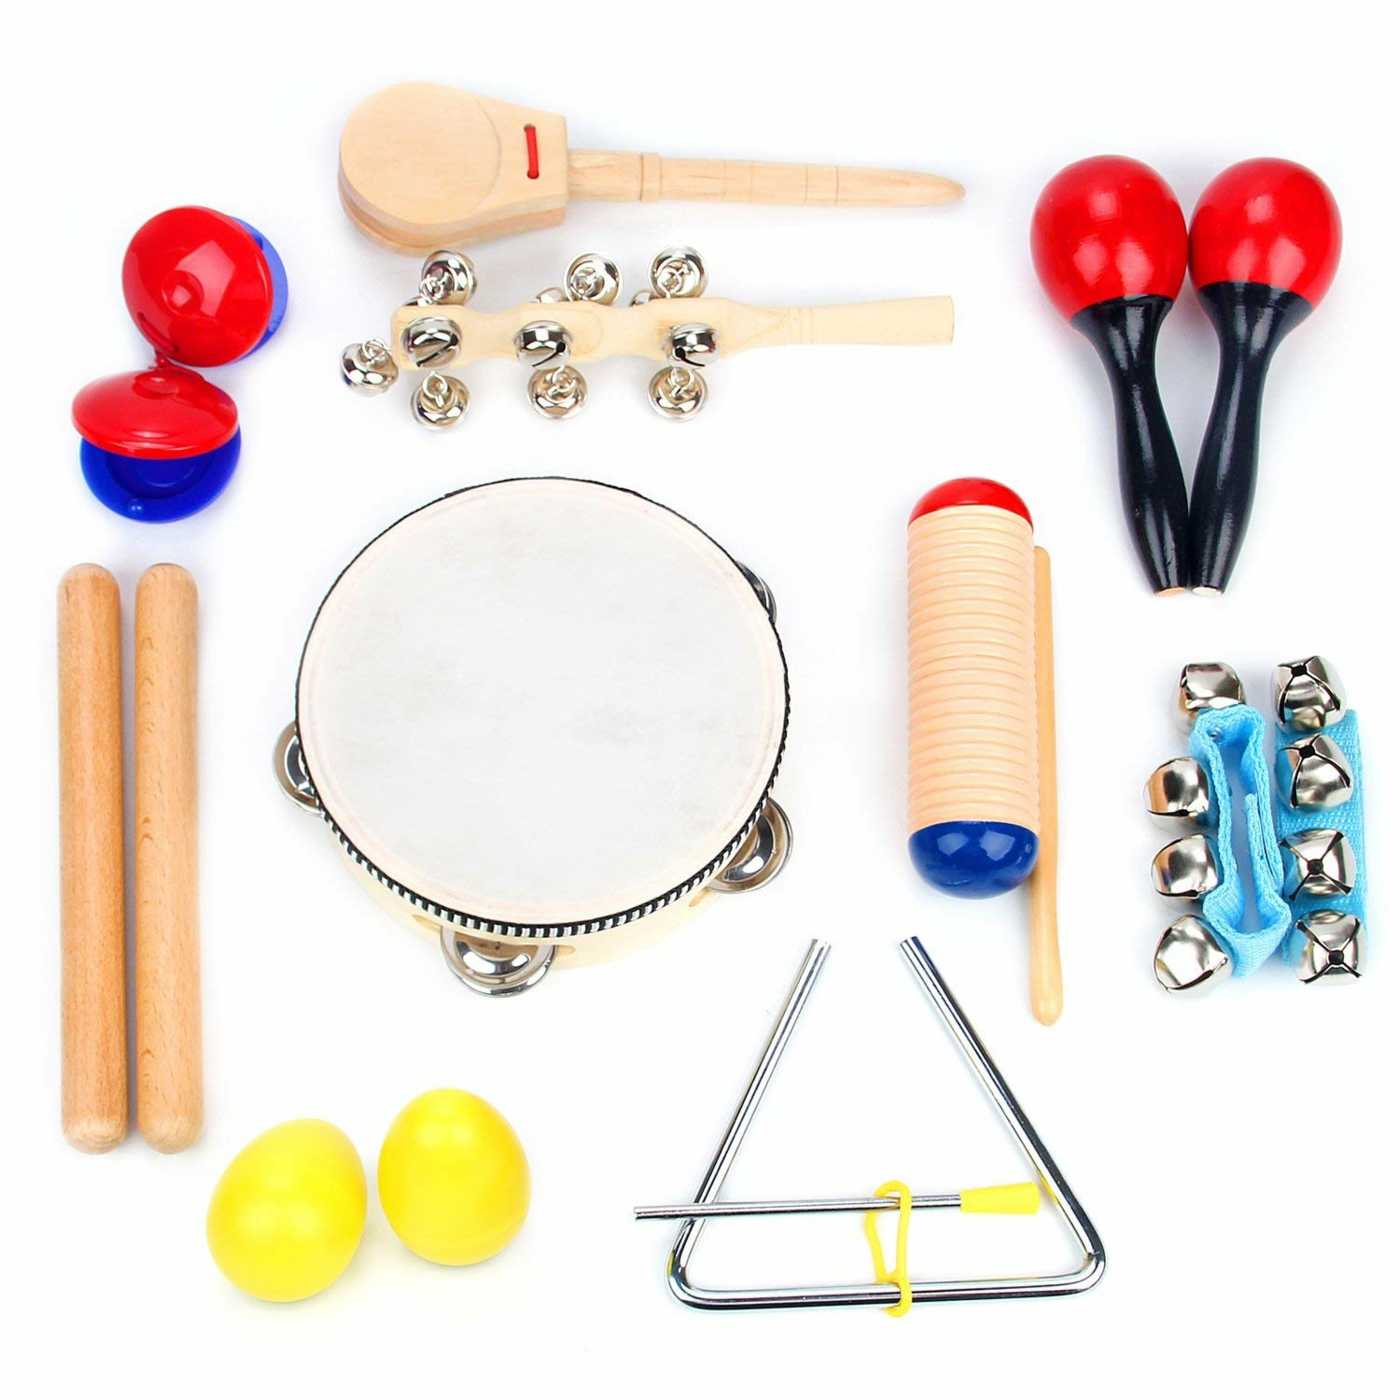 Children's musical instruments also make grandchildren's fun and foster development